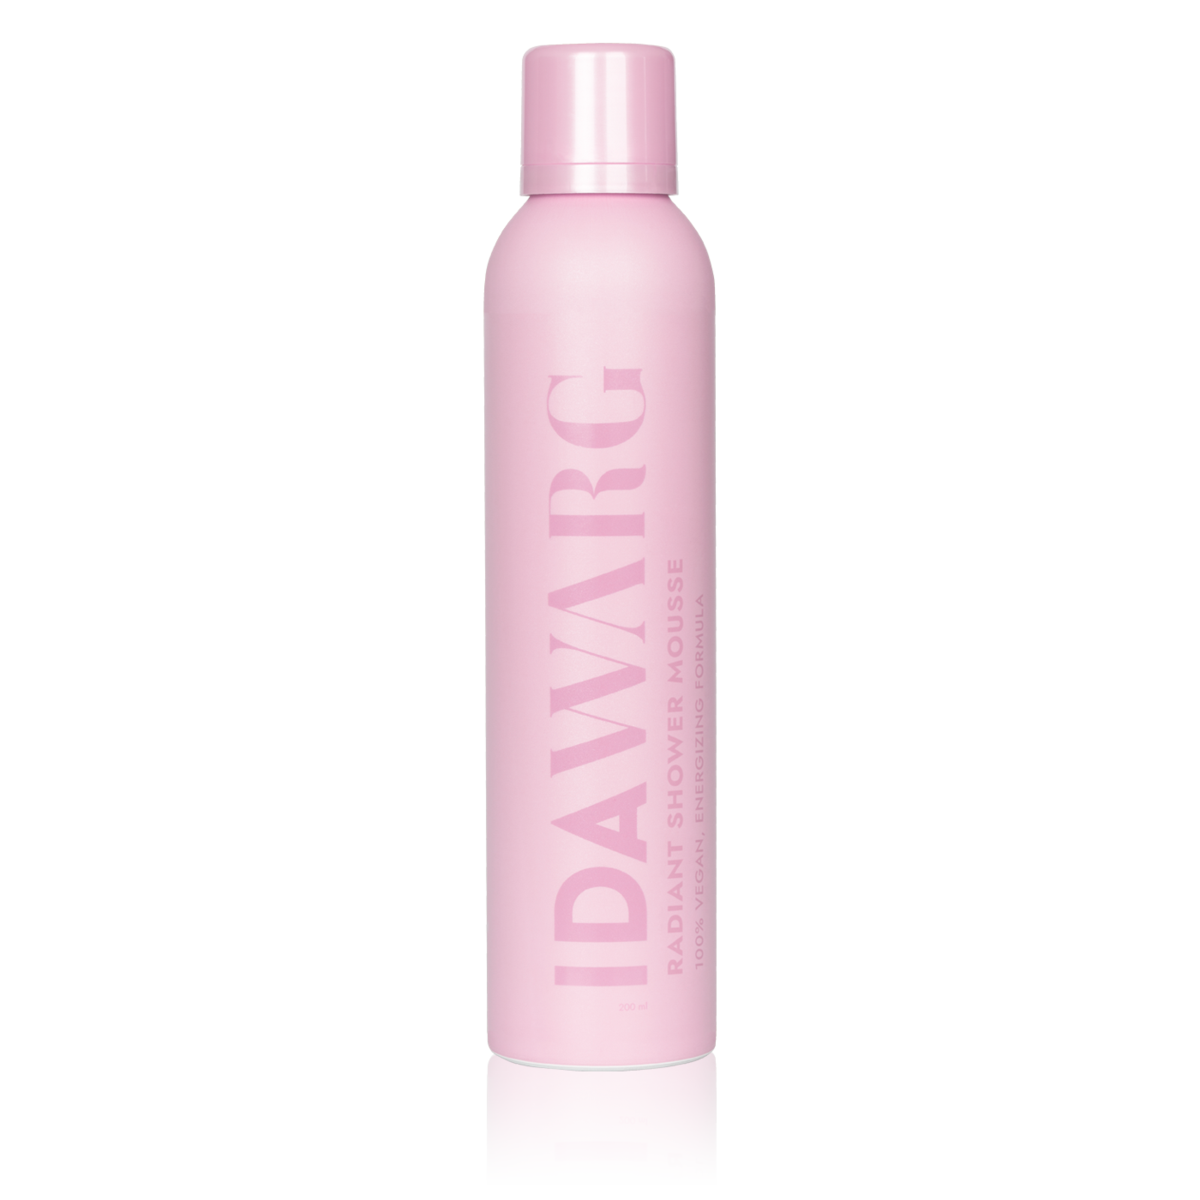 IDA WARG Radiant Shower Mousse, 200ml - Hairsale.se